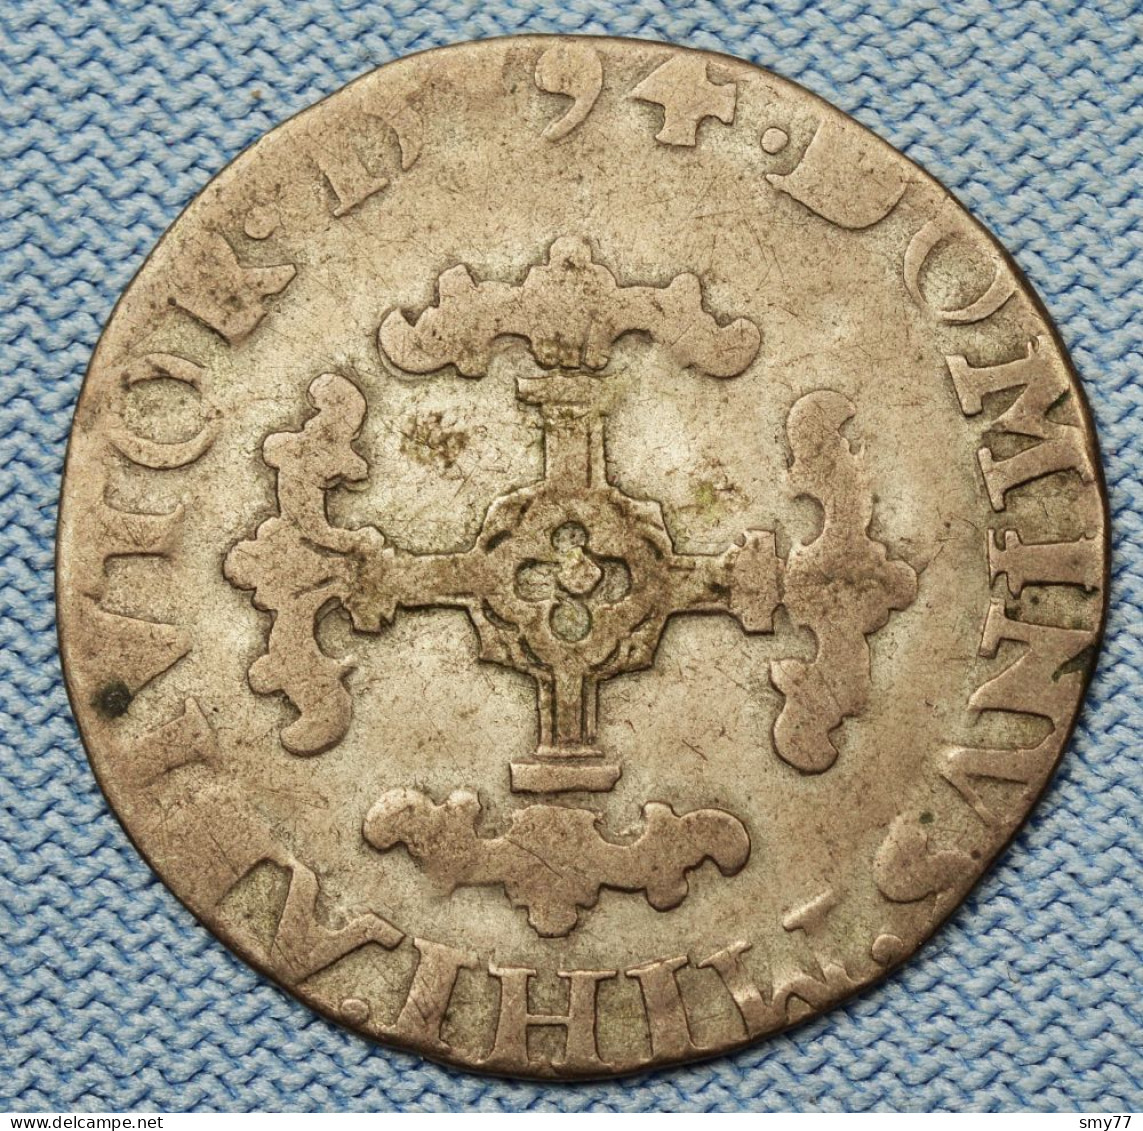 Brabant • 1/20 écu  1594 • Philippe II   ►R◄ Belgique / Pays-Bas Espagnols / Philip II / Belgian States  • [24-563] - 1556-1713 Paesi Bassi Spagnoli